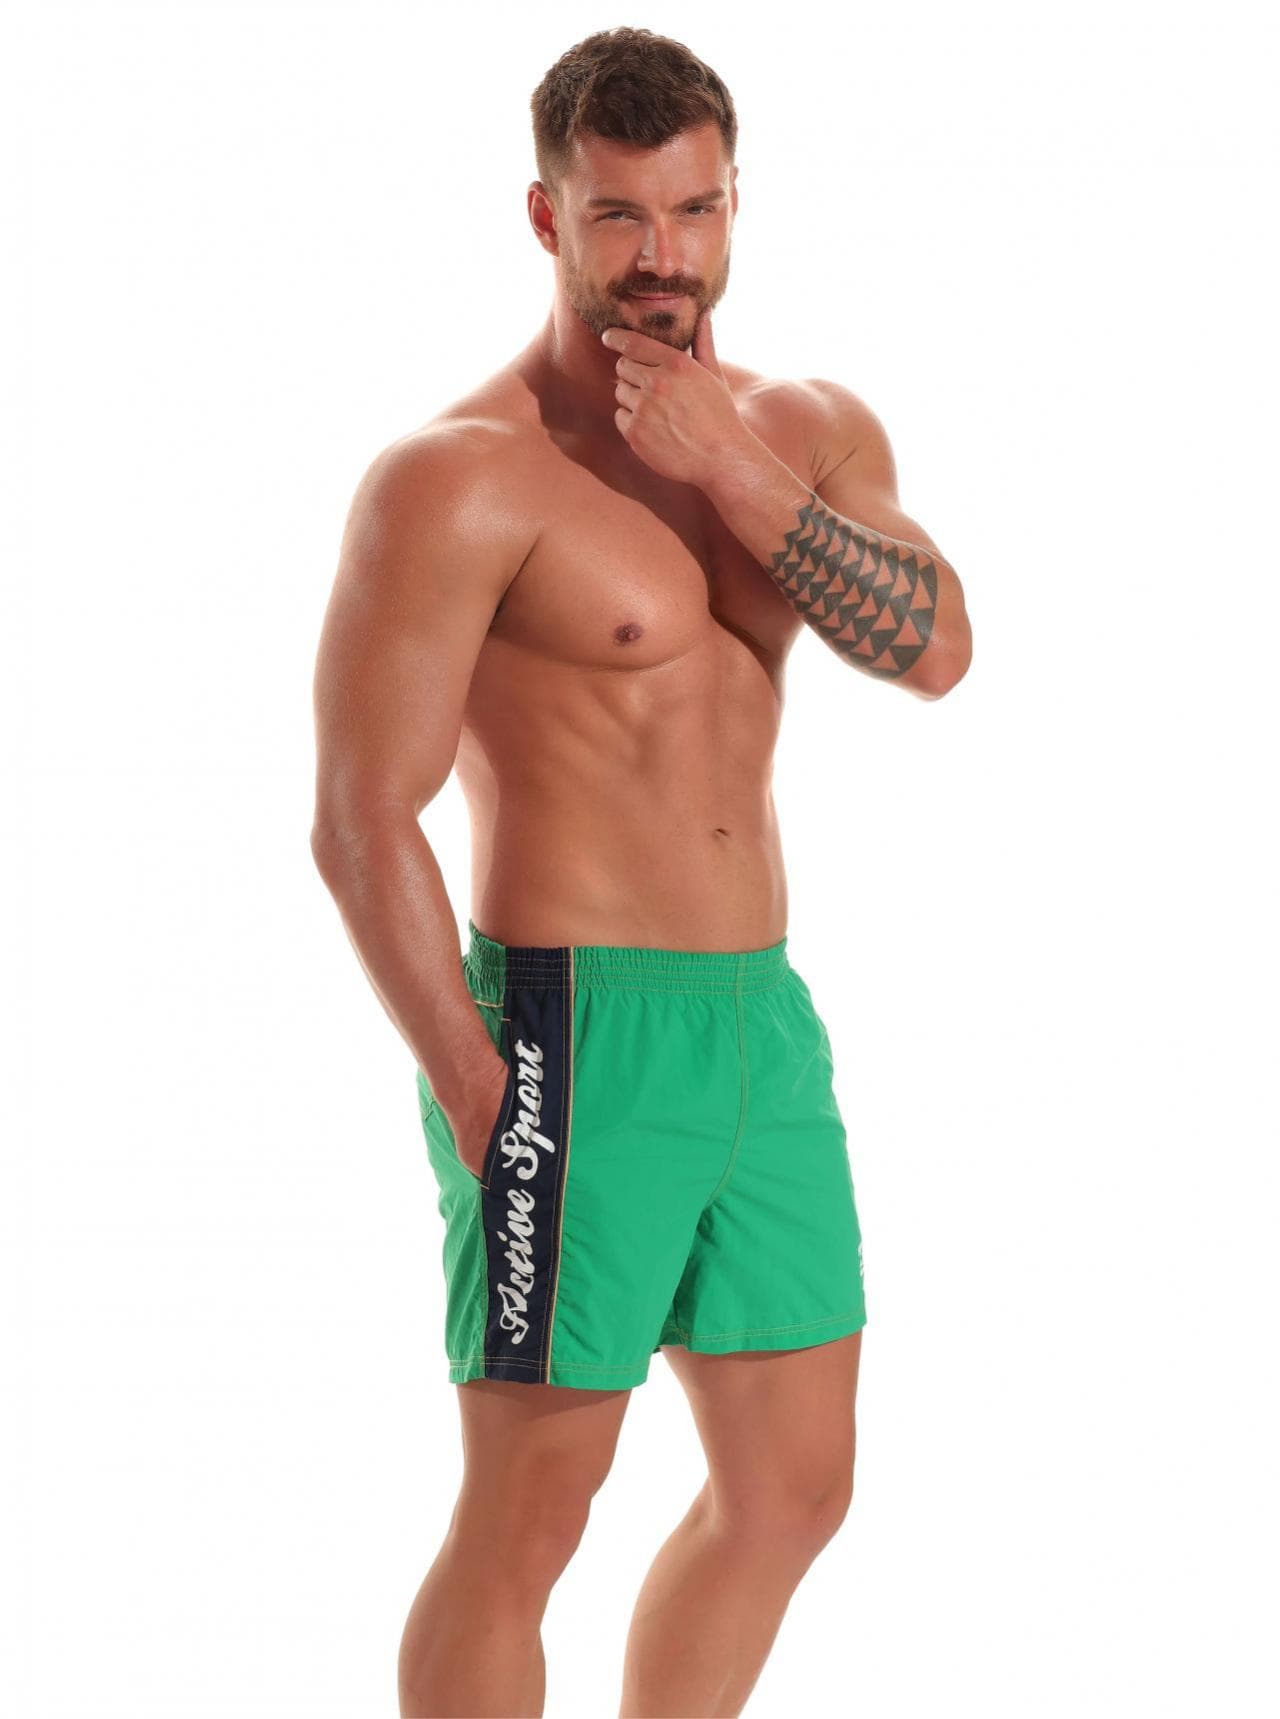 Шорты звездочка. Шорты для плавания Jolidon. Шорты ido (зеленый). Зелёные шорты мужские. Мужчина в зеленых шортах.